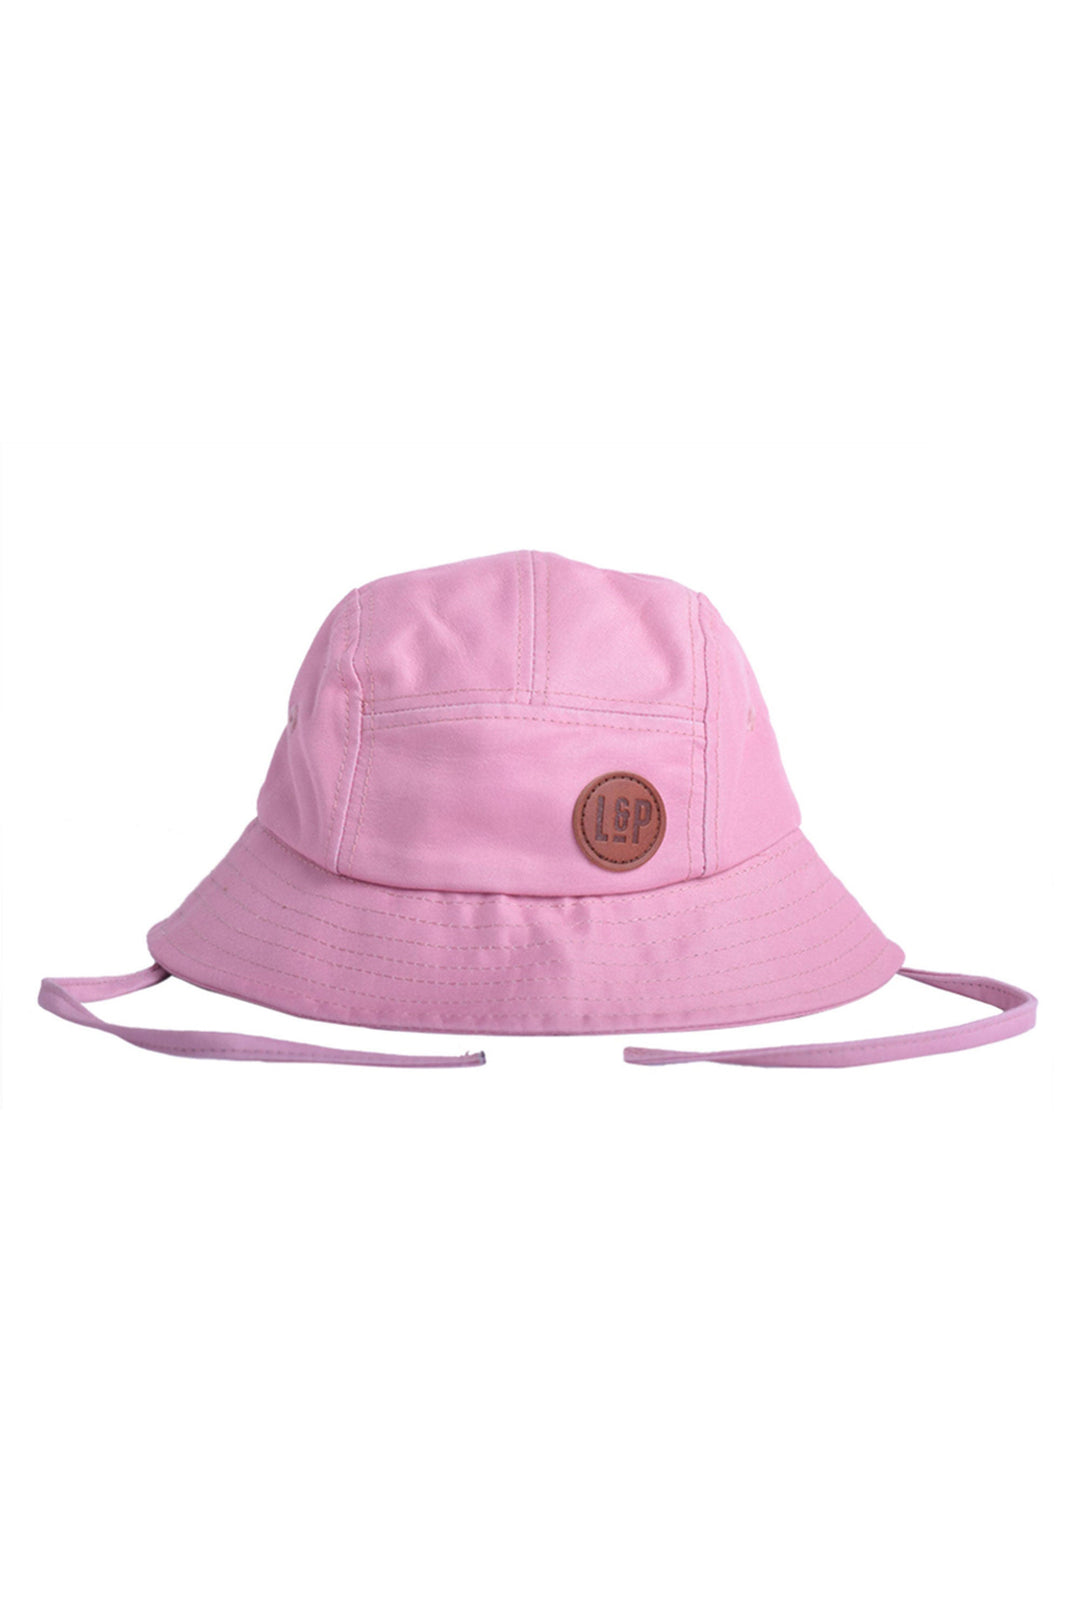 Street Hat [Child]